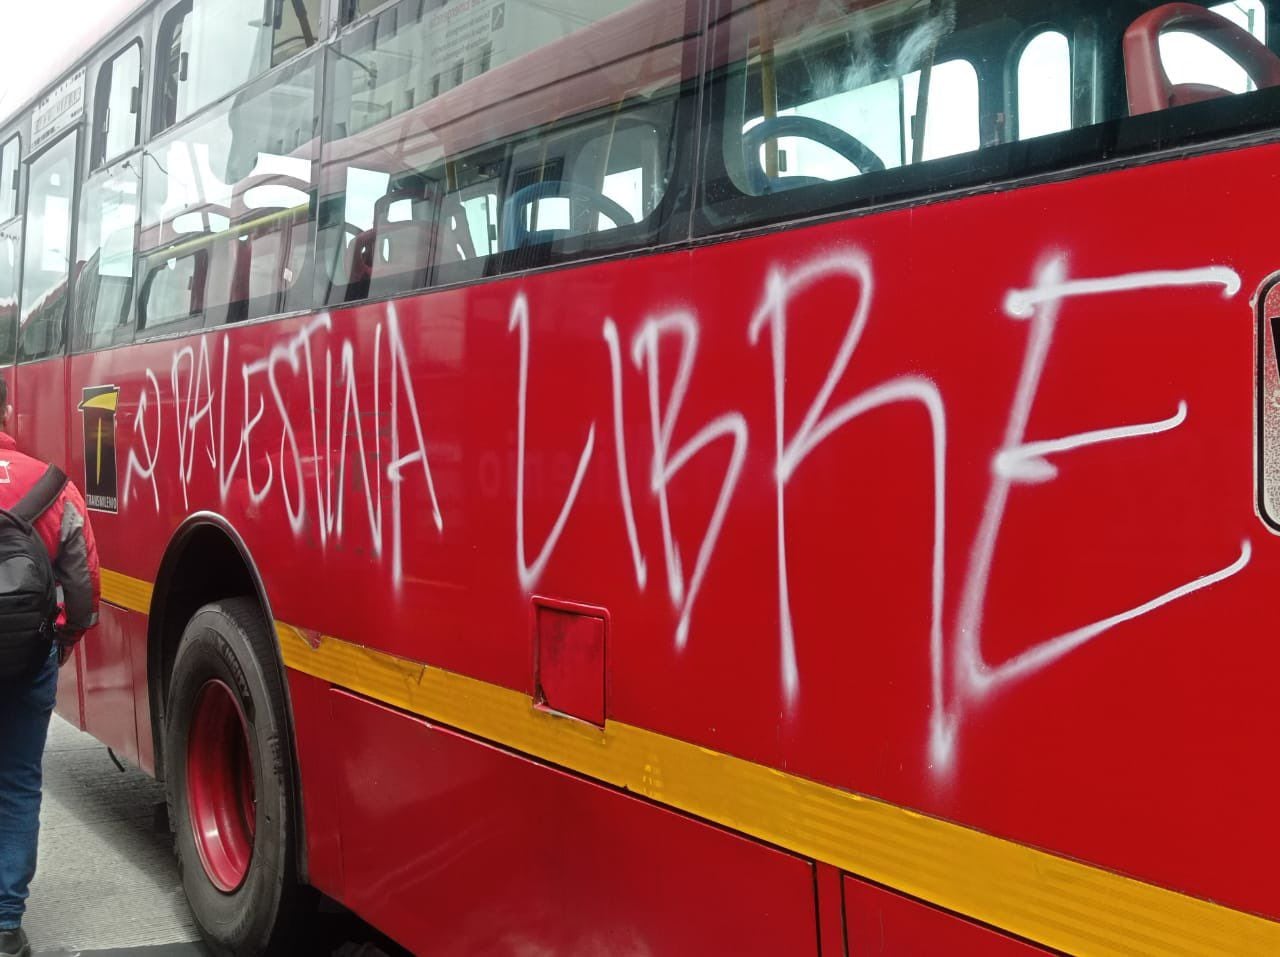 Manifestantes pintaron algunas fachas y buses de Transmilenio en Bogotá en medio de la marcha del Primero de mayo - crédito @DonAlguienO/X